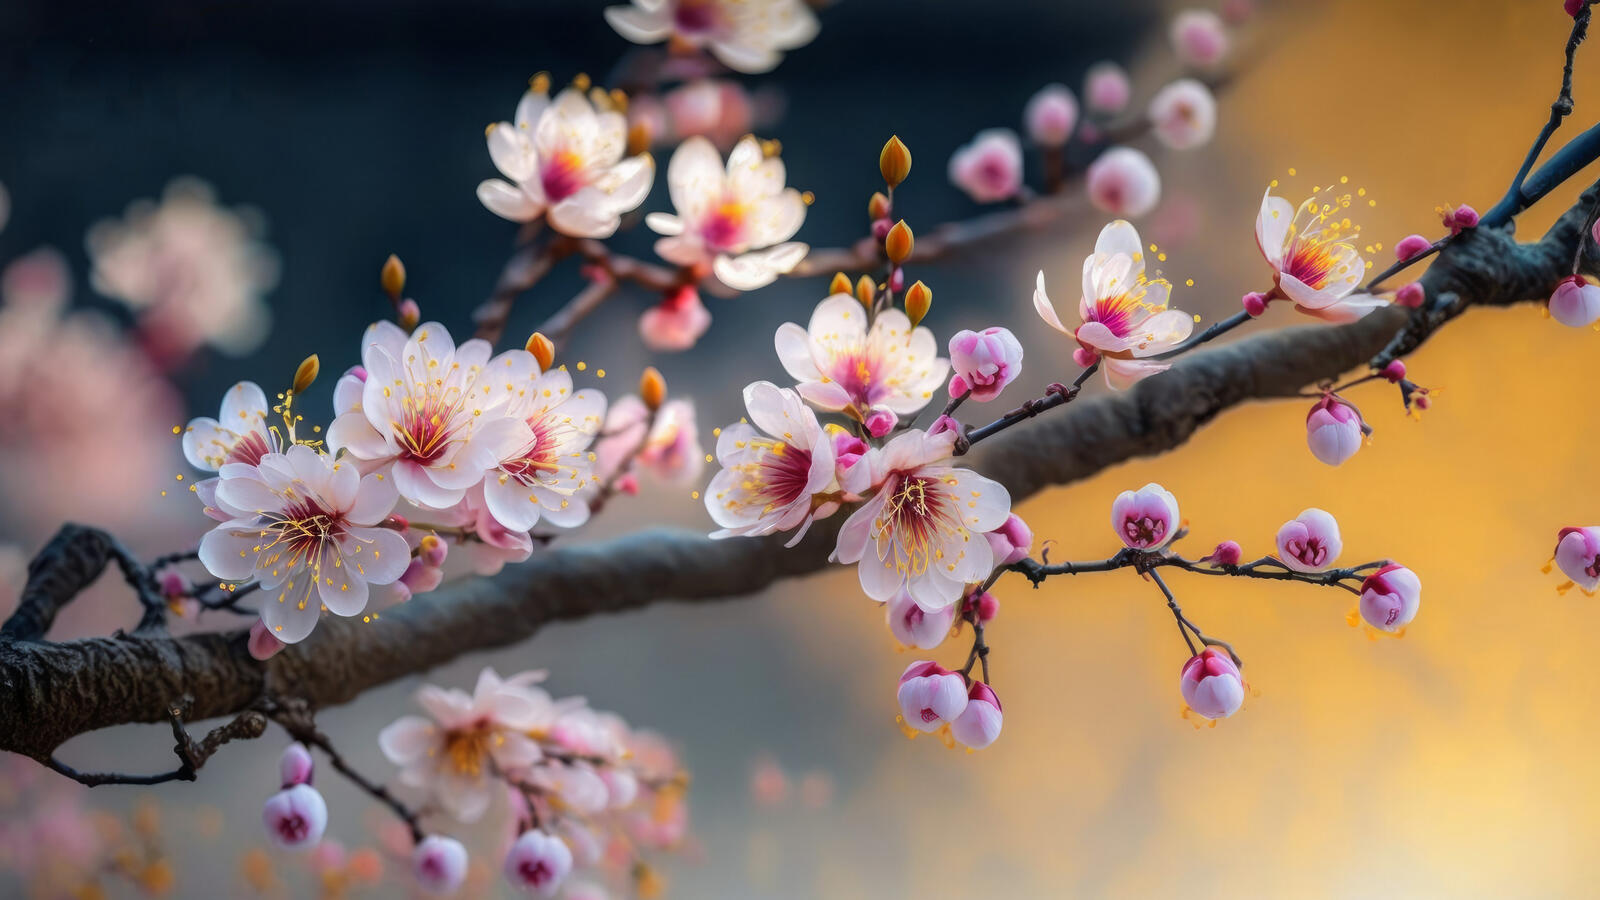 Бесплатное фото Ветка дерева с маленькими цветочками